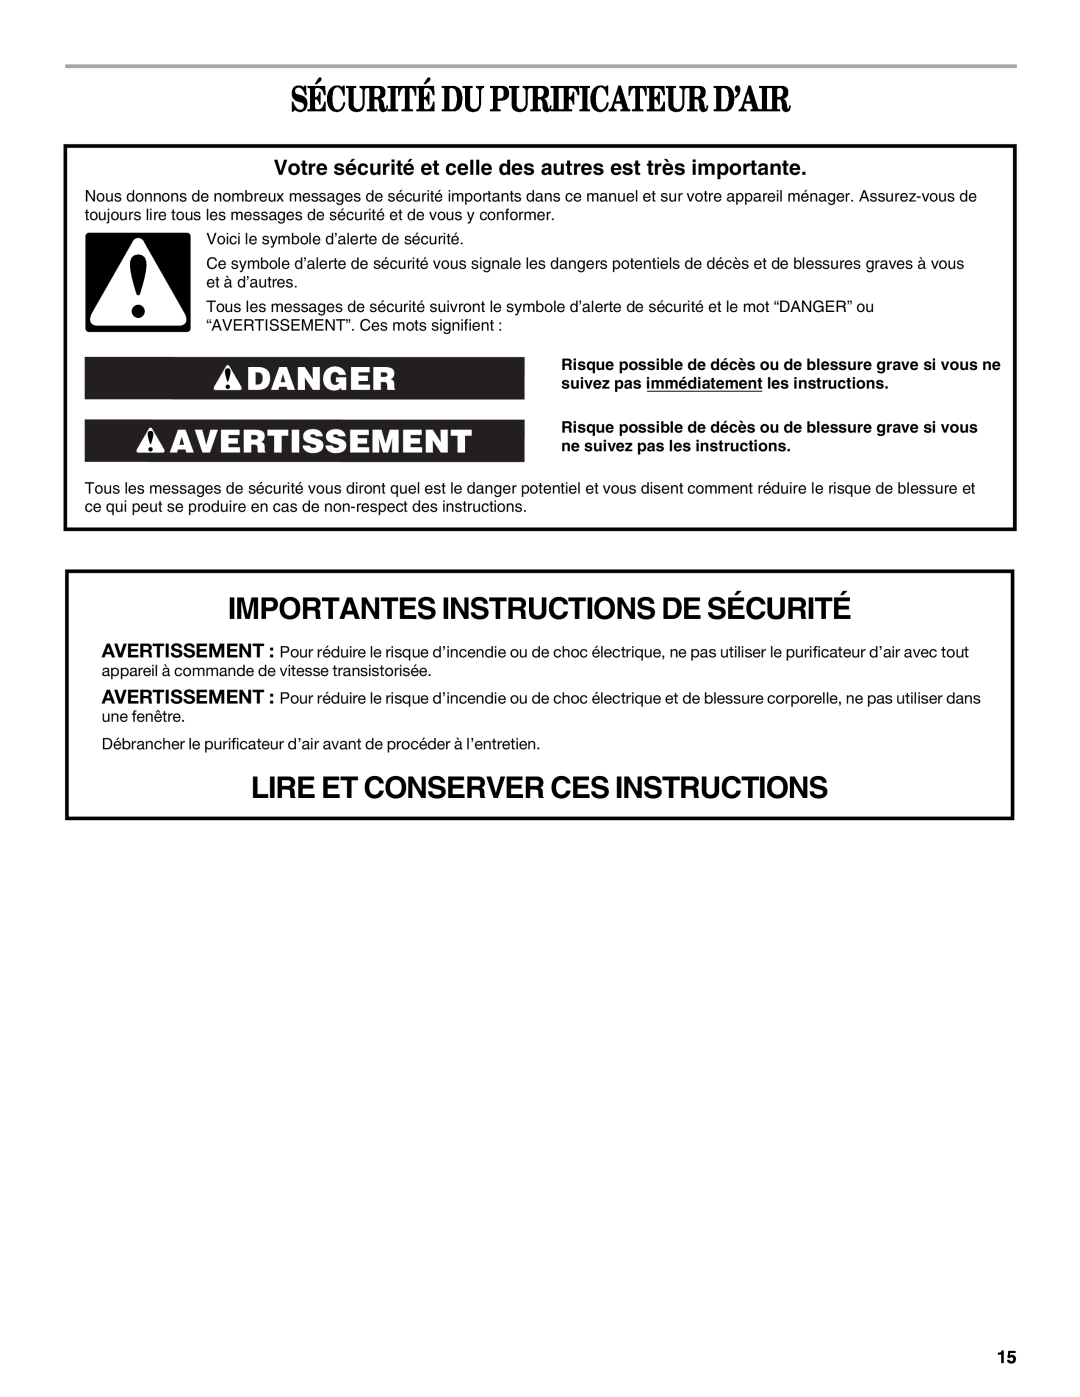 Whirlpool AP450, AP250 manual Sécurité Du Purificateur D’Air, Danger Avertissement, Importantes Instructions De Sécurité 